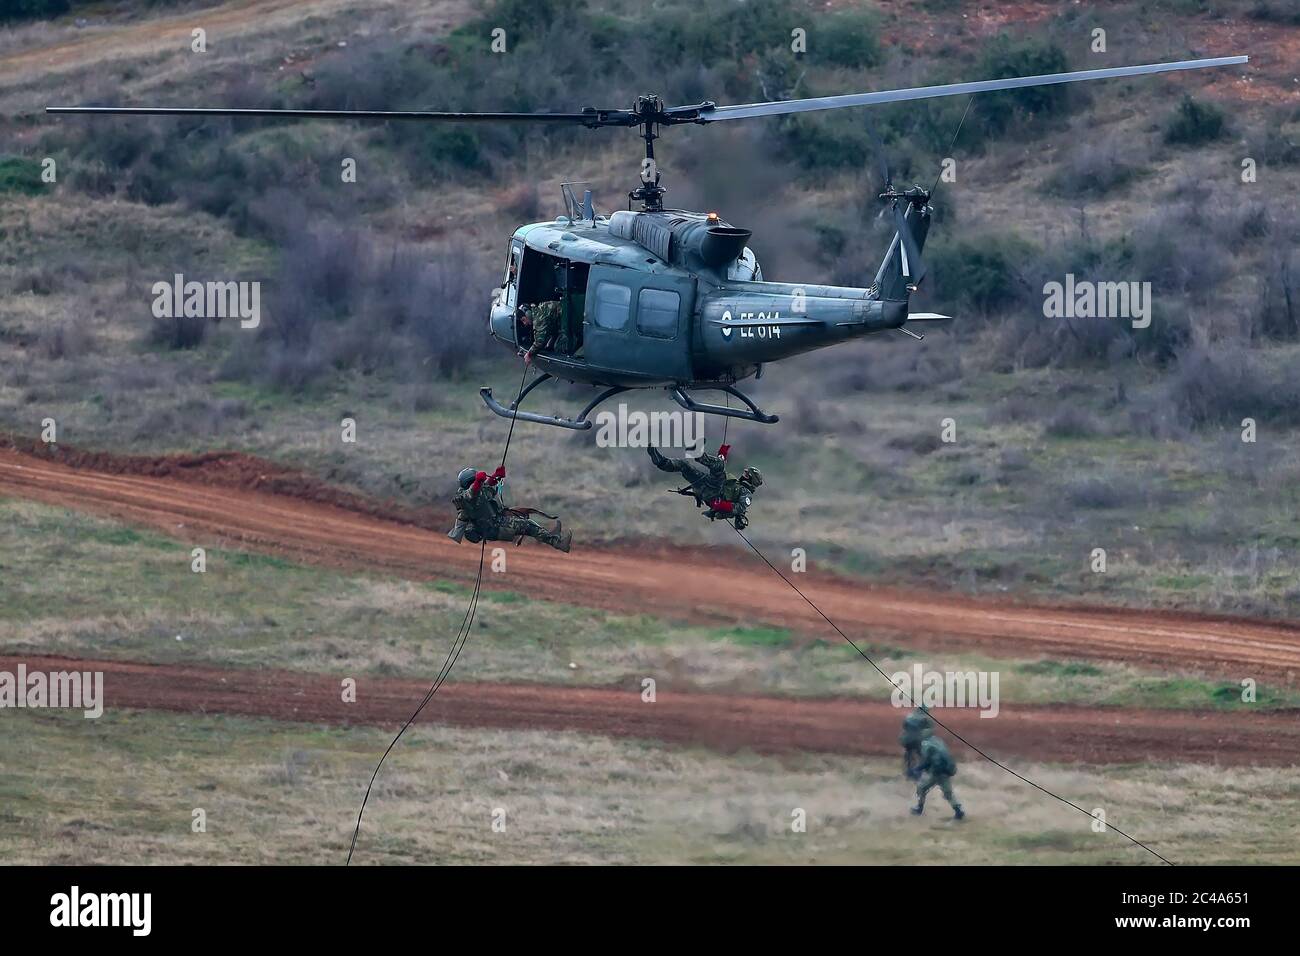 Askos, Grèce - 14 févr. 2020: UH-1H Huey hélicoptère prend part à un exercice militaire international avec un vrai feu (Golden Fleece -20) entre grec, Banque D'Images